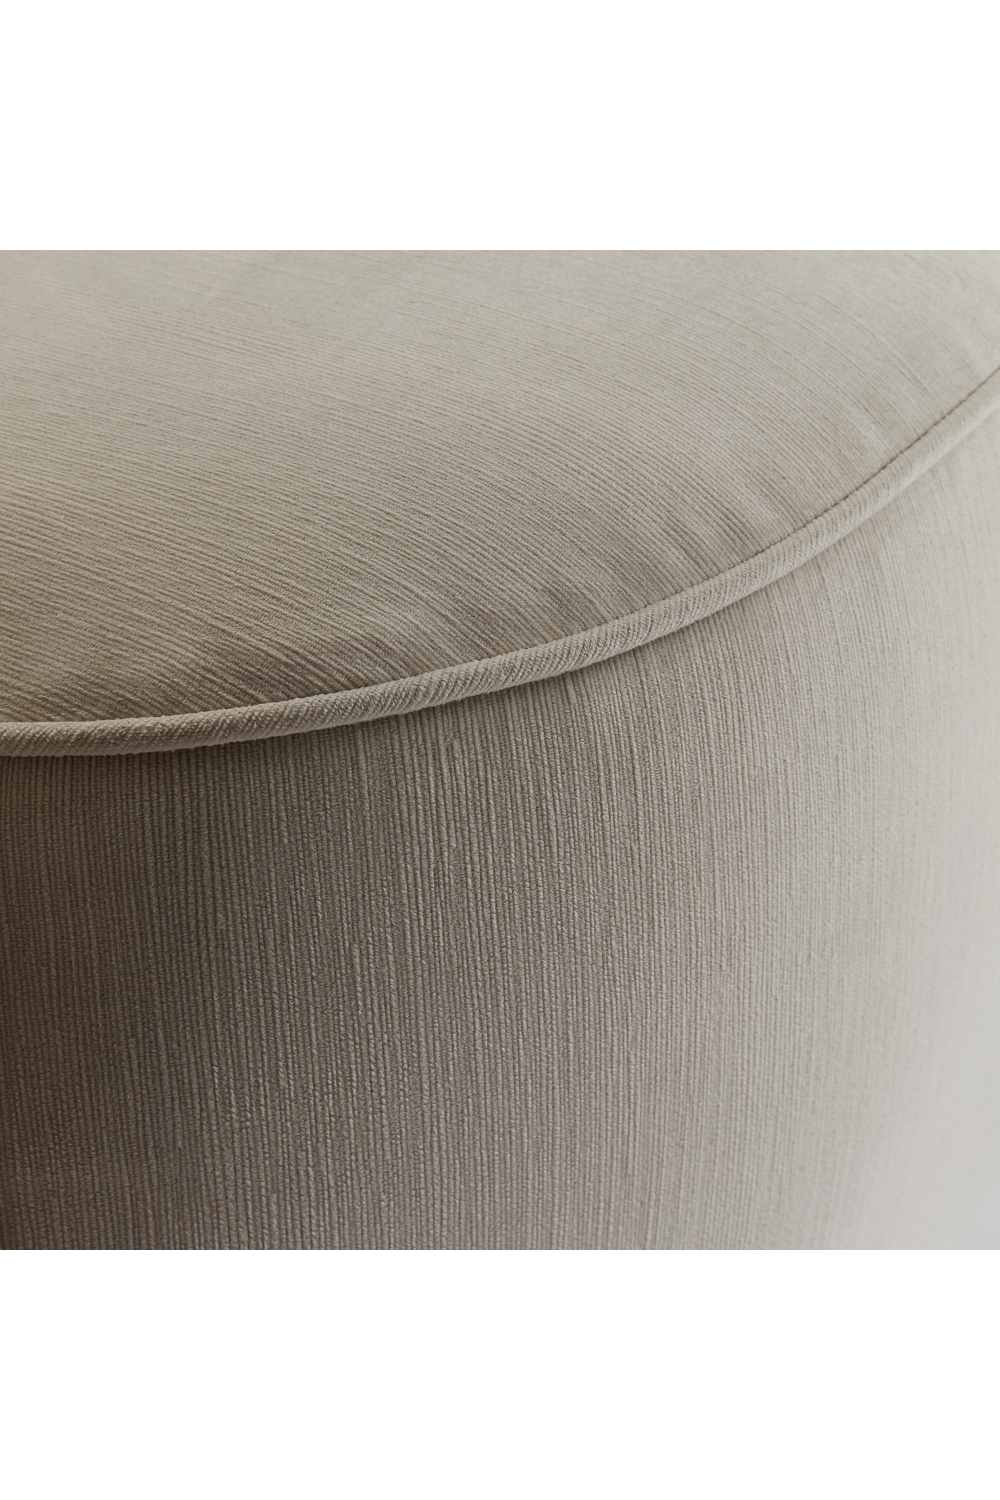 Gray Velvet Pouf Style Swivel Chair | Andrew Martin Madison | OROA